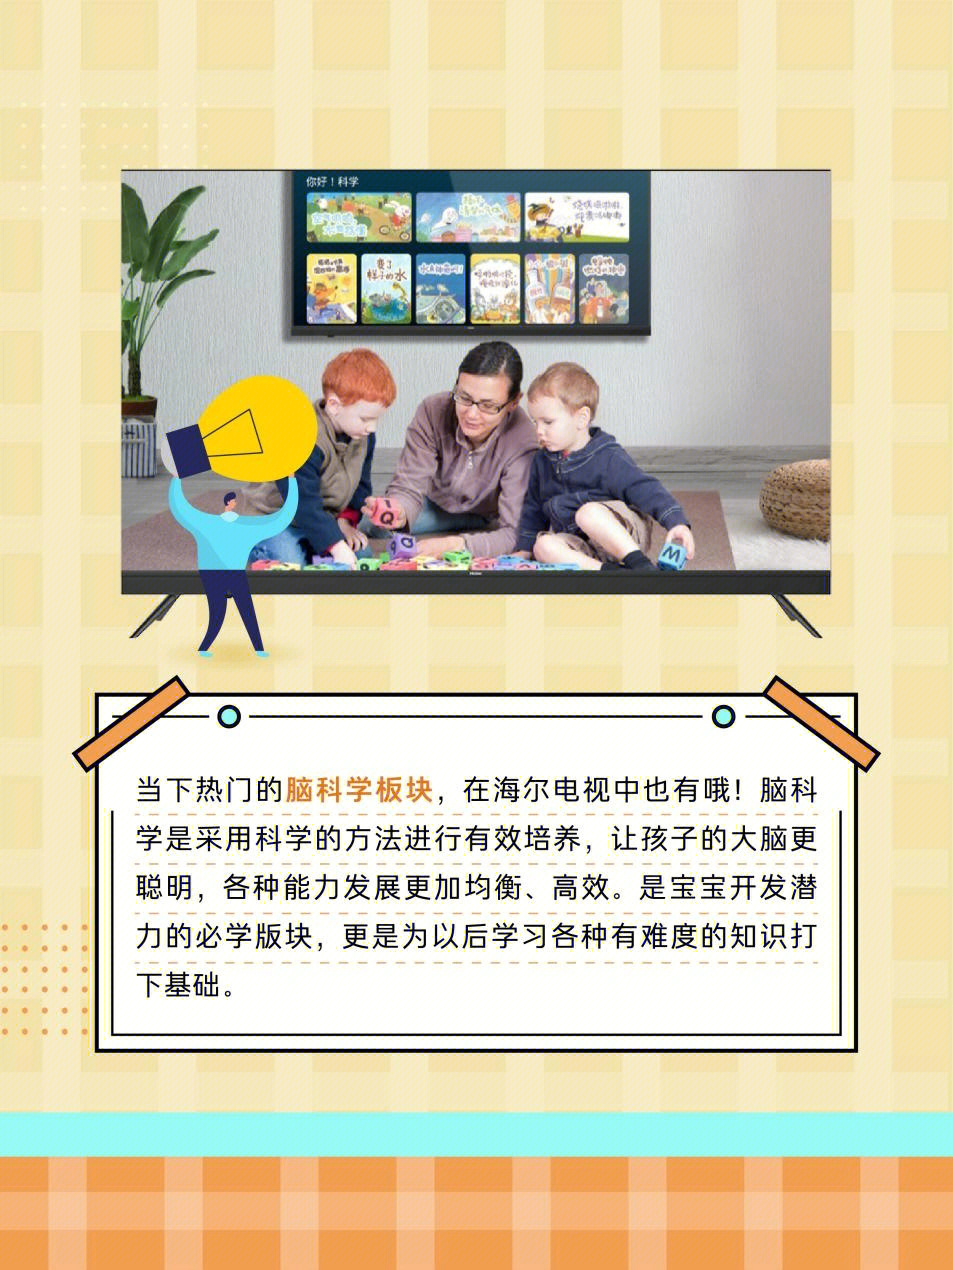 海尔电视的京师智慧学堂是海尔电视独有的教育模块,它是由北京师范